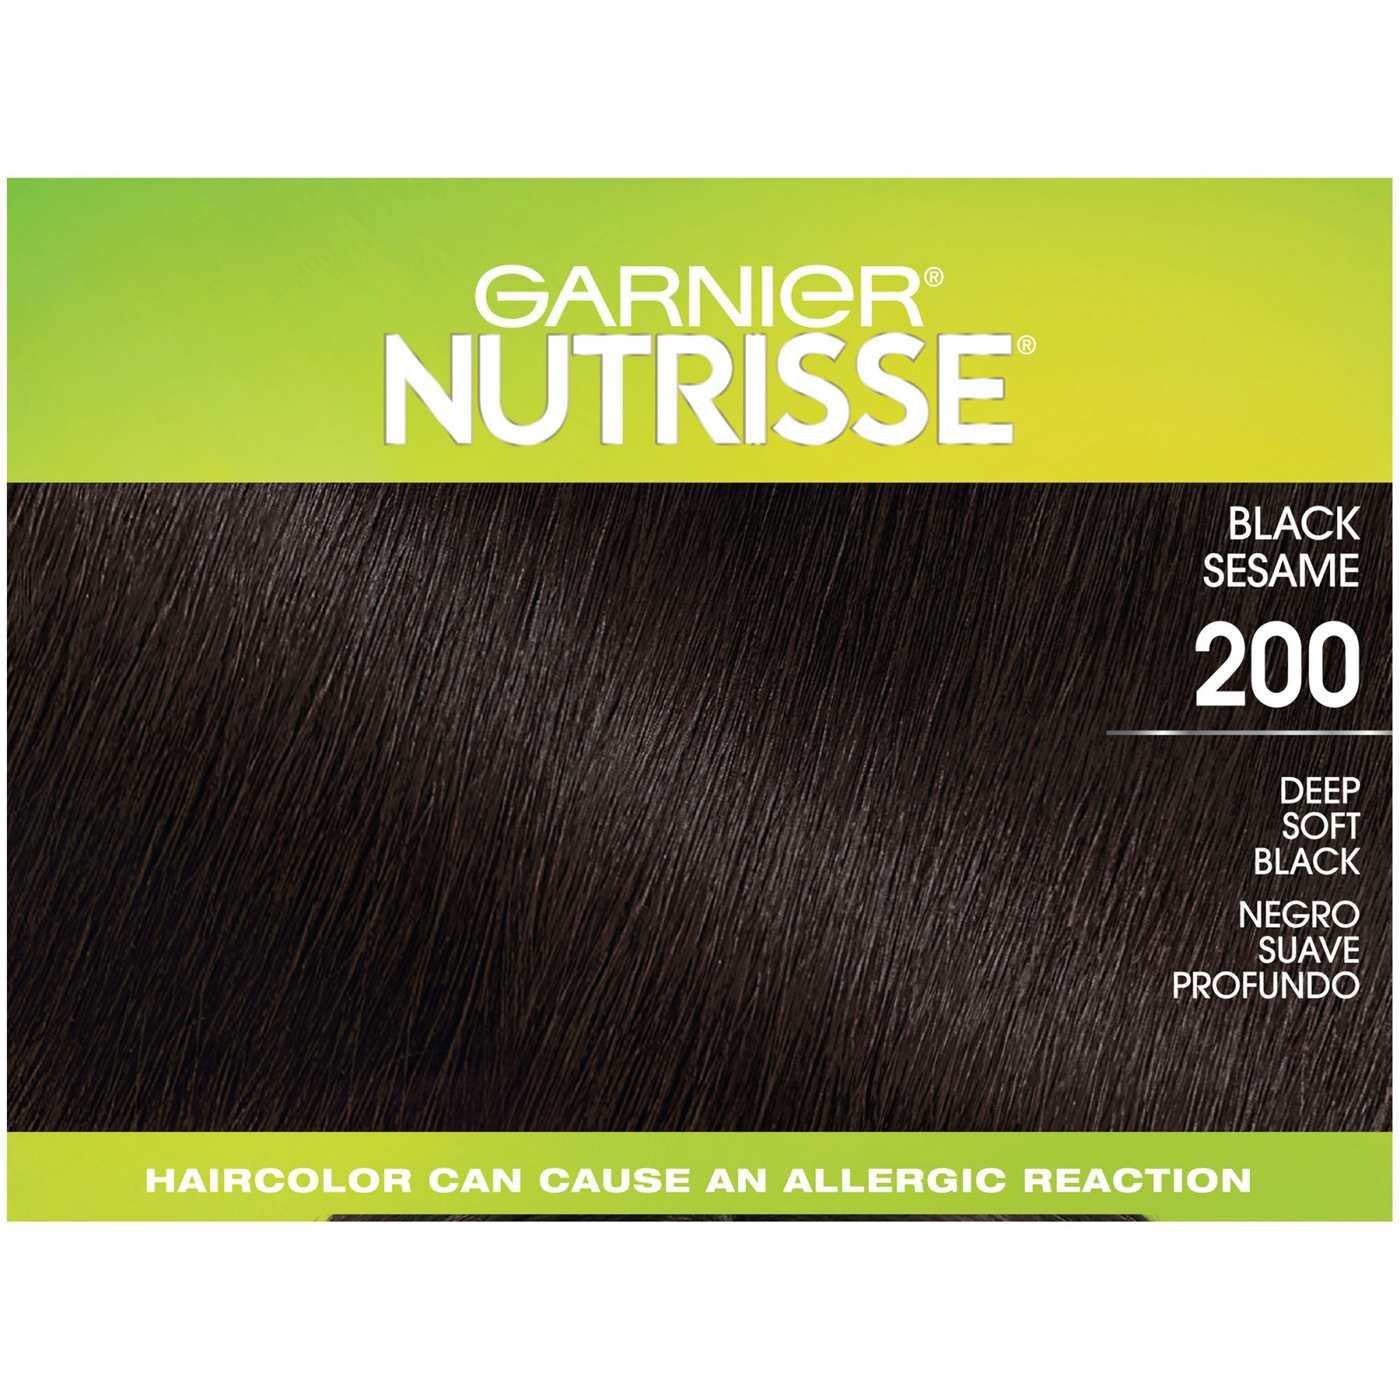 Garnier Nutrisse Ultra Coverage Nourishing Color Creme - 200 Deep Soft Black (Black Sesame); image 6 of 8